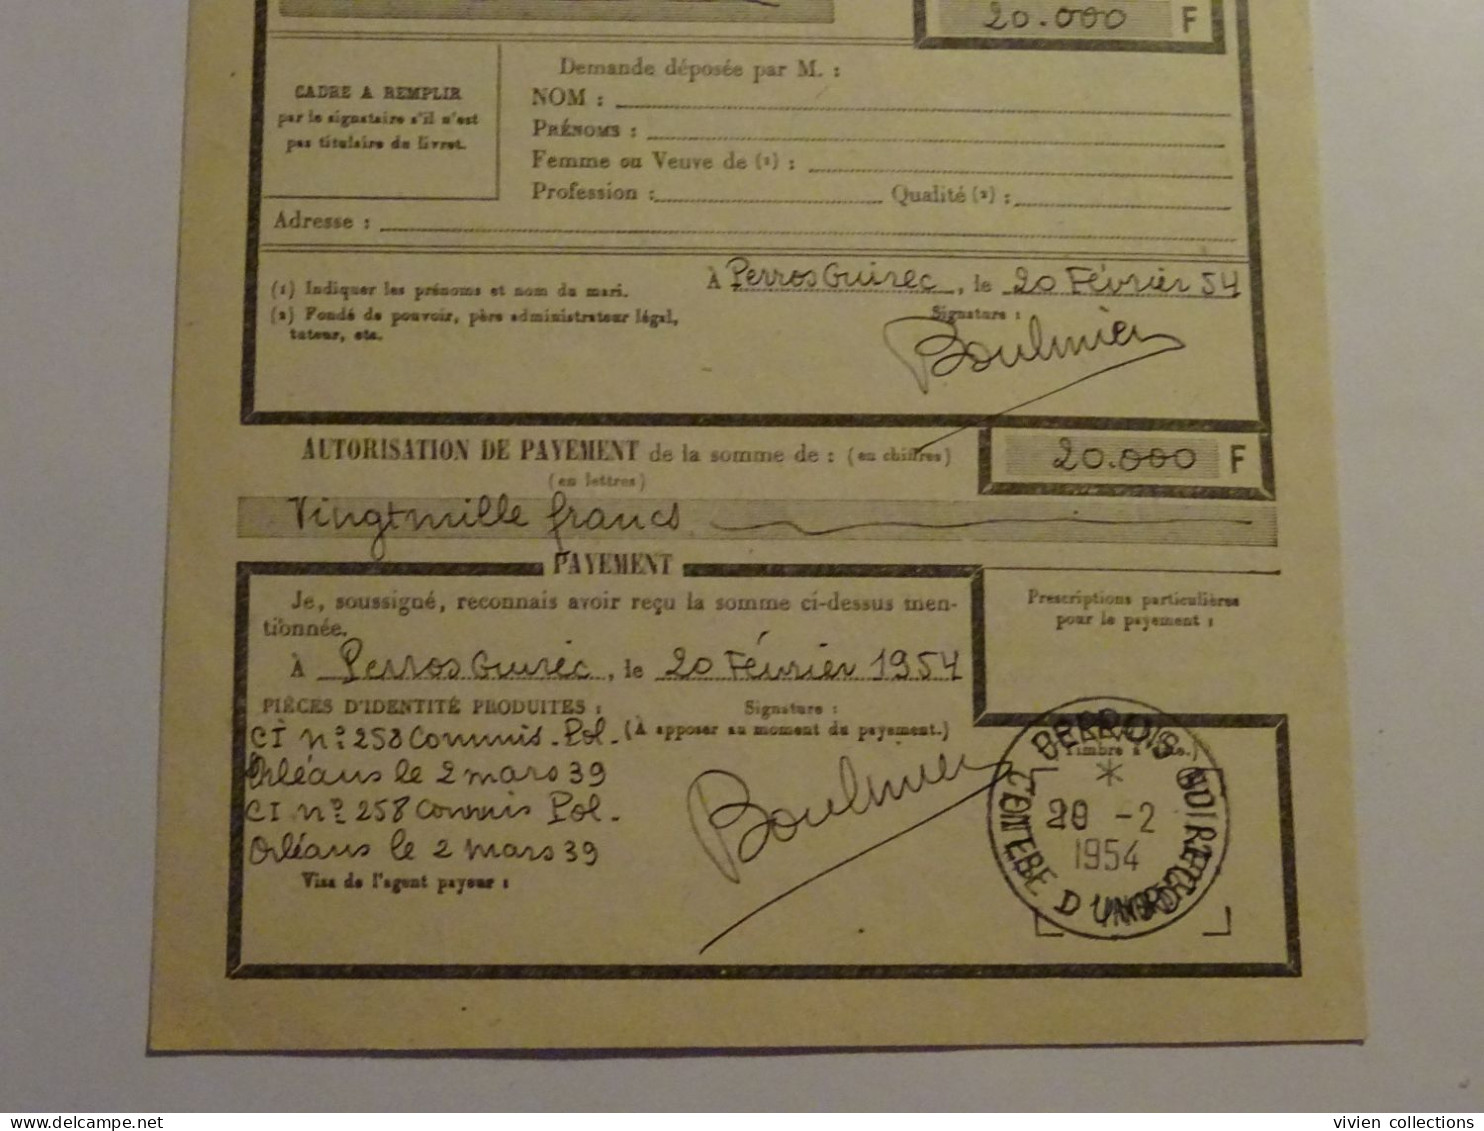 France cours pratique d'instruction Orléans 1954 télégramme CCNE remboursement a vue télégraphique pour Perros Guirec 22